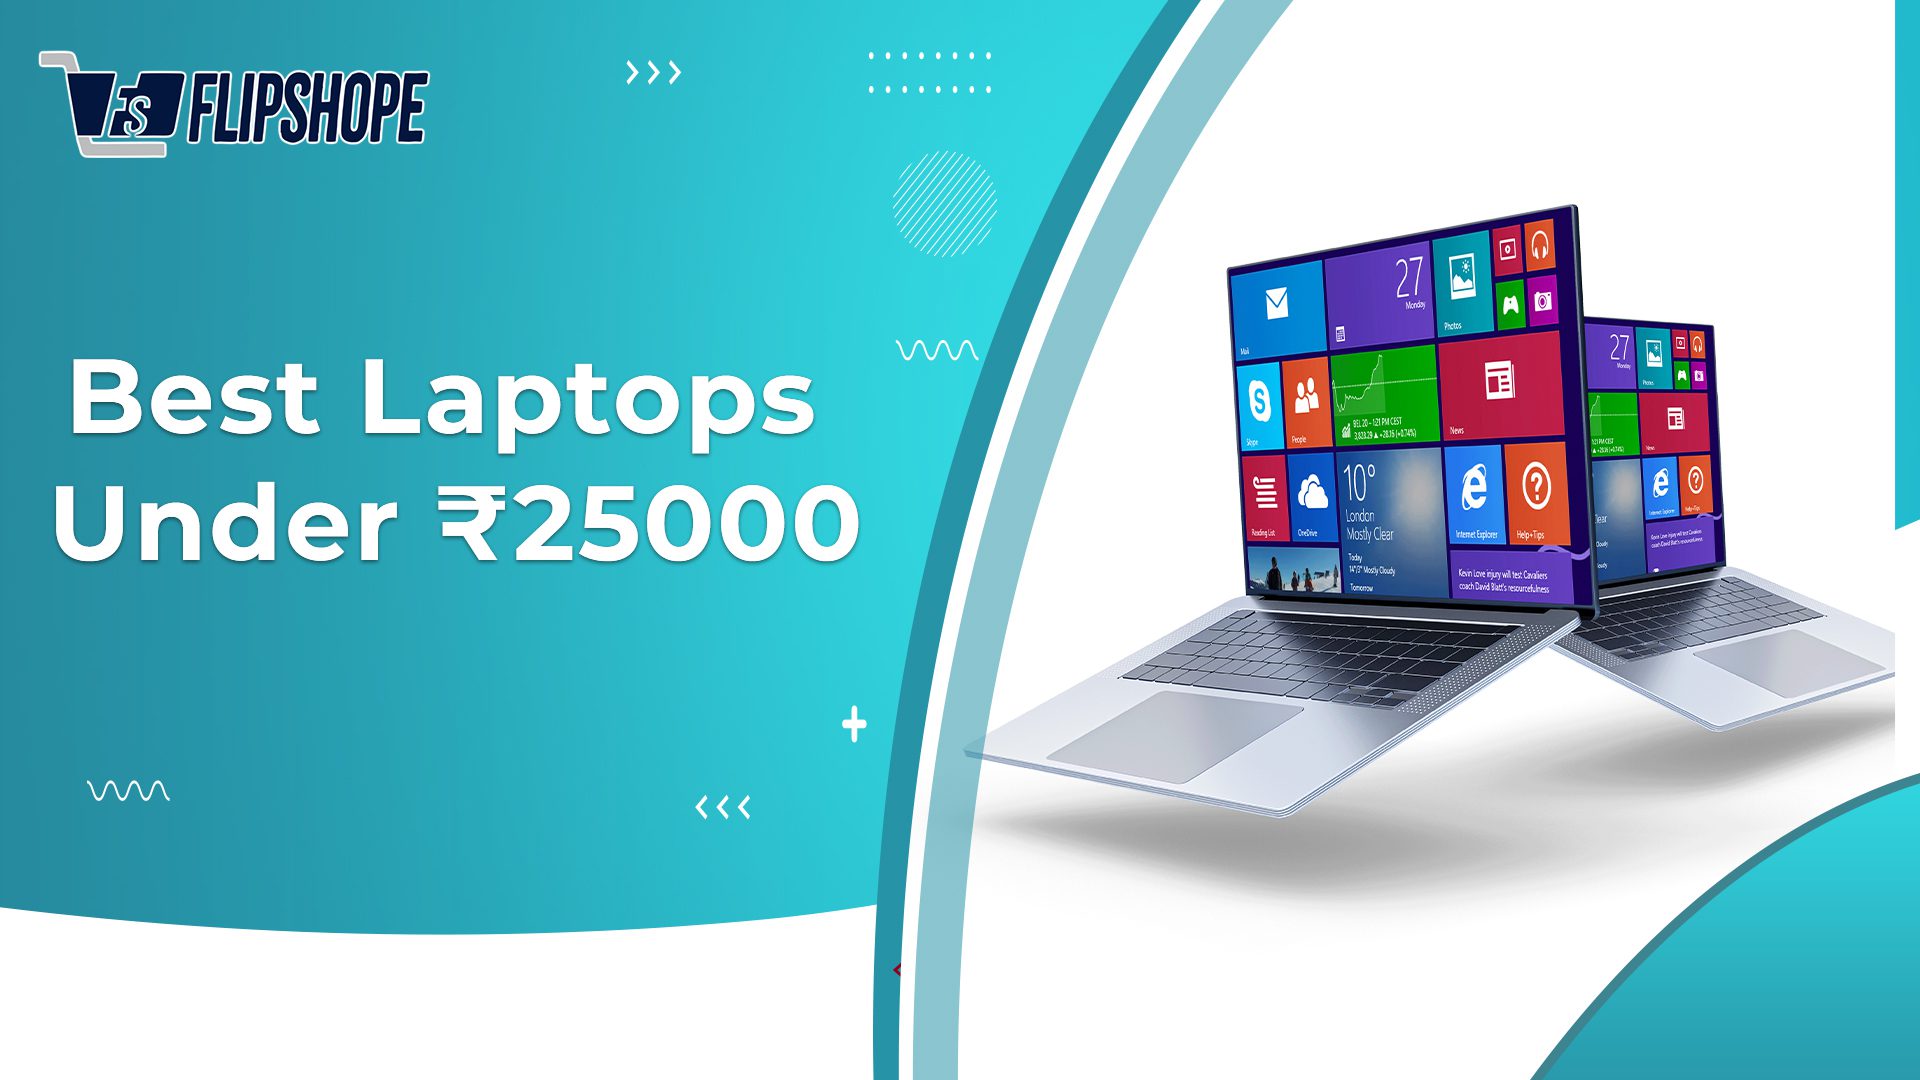 Best Laptops Under Rs. 25,000